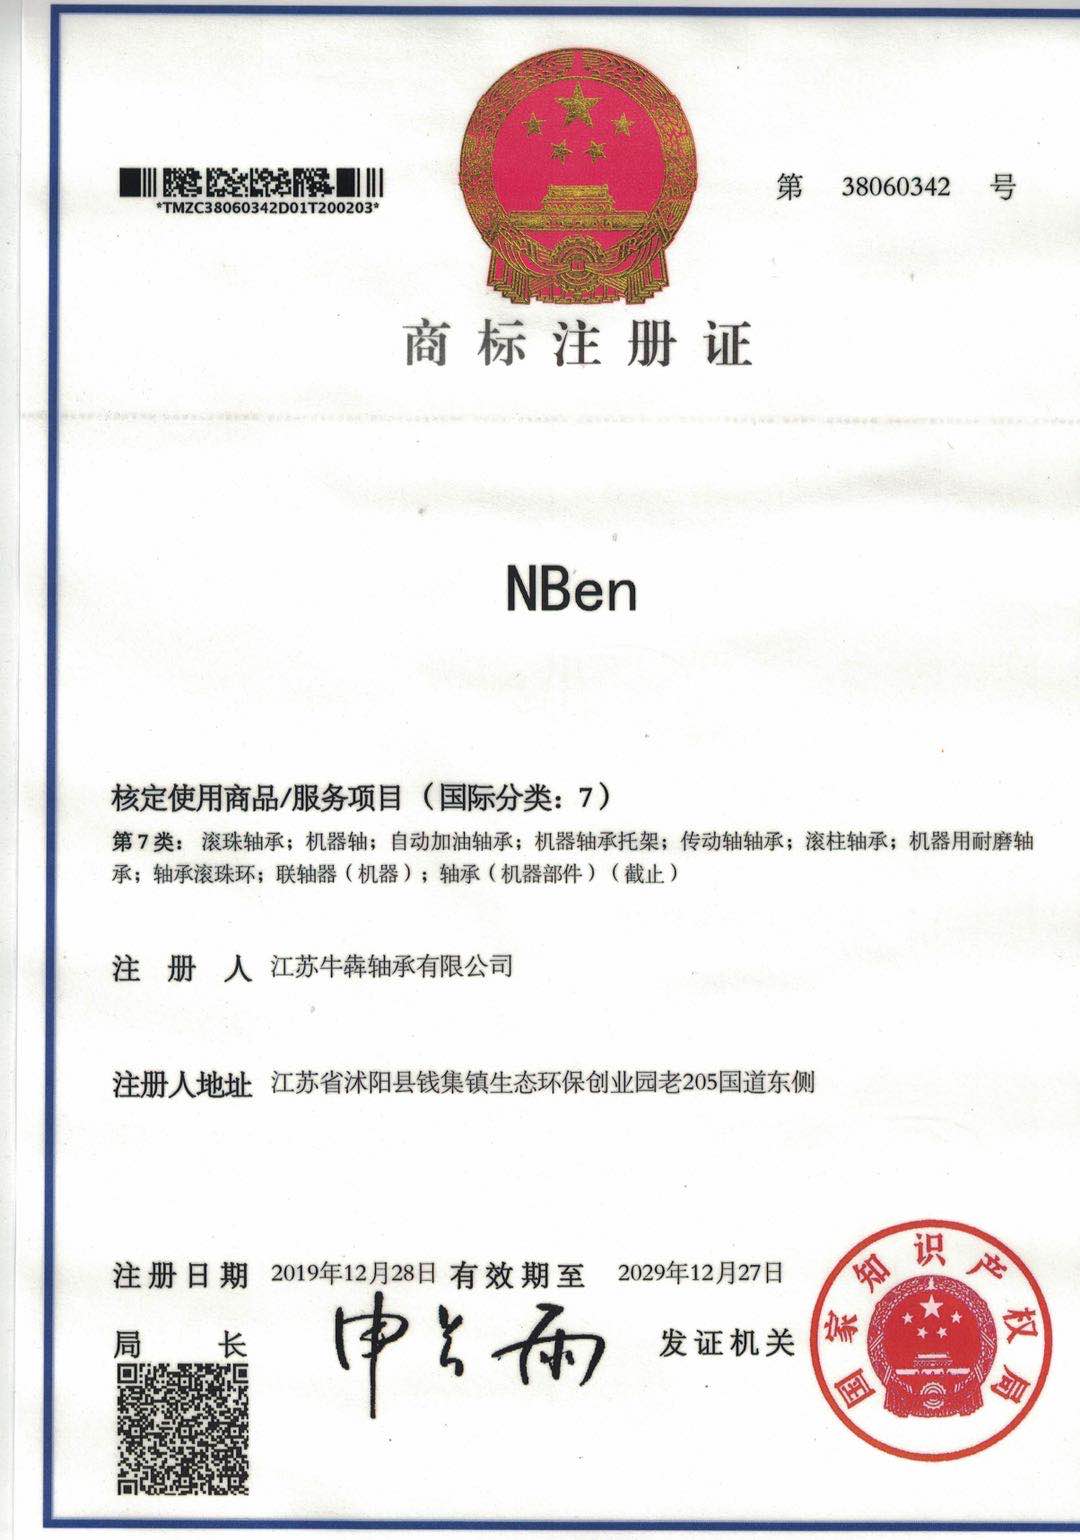 NBEN brand